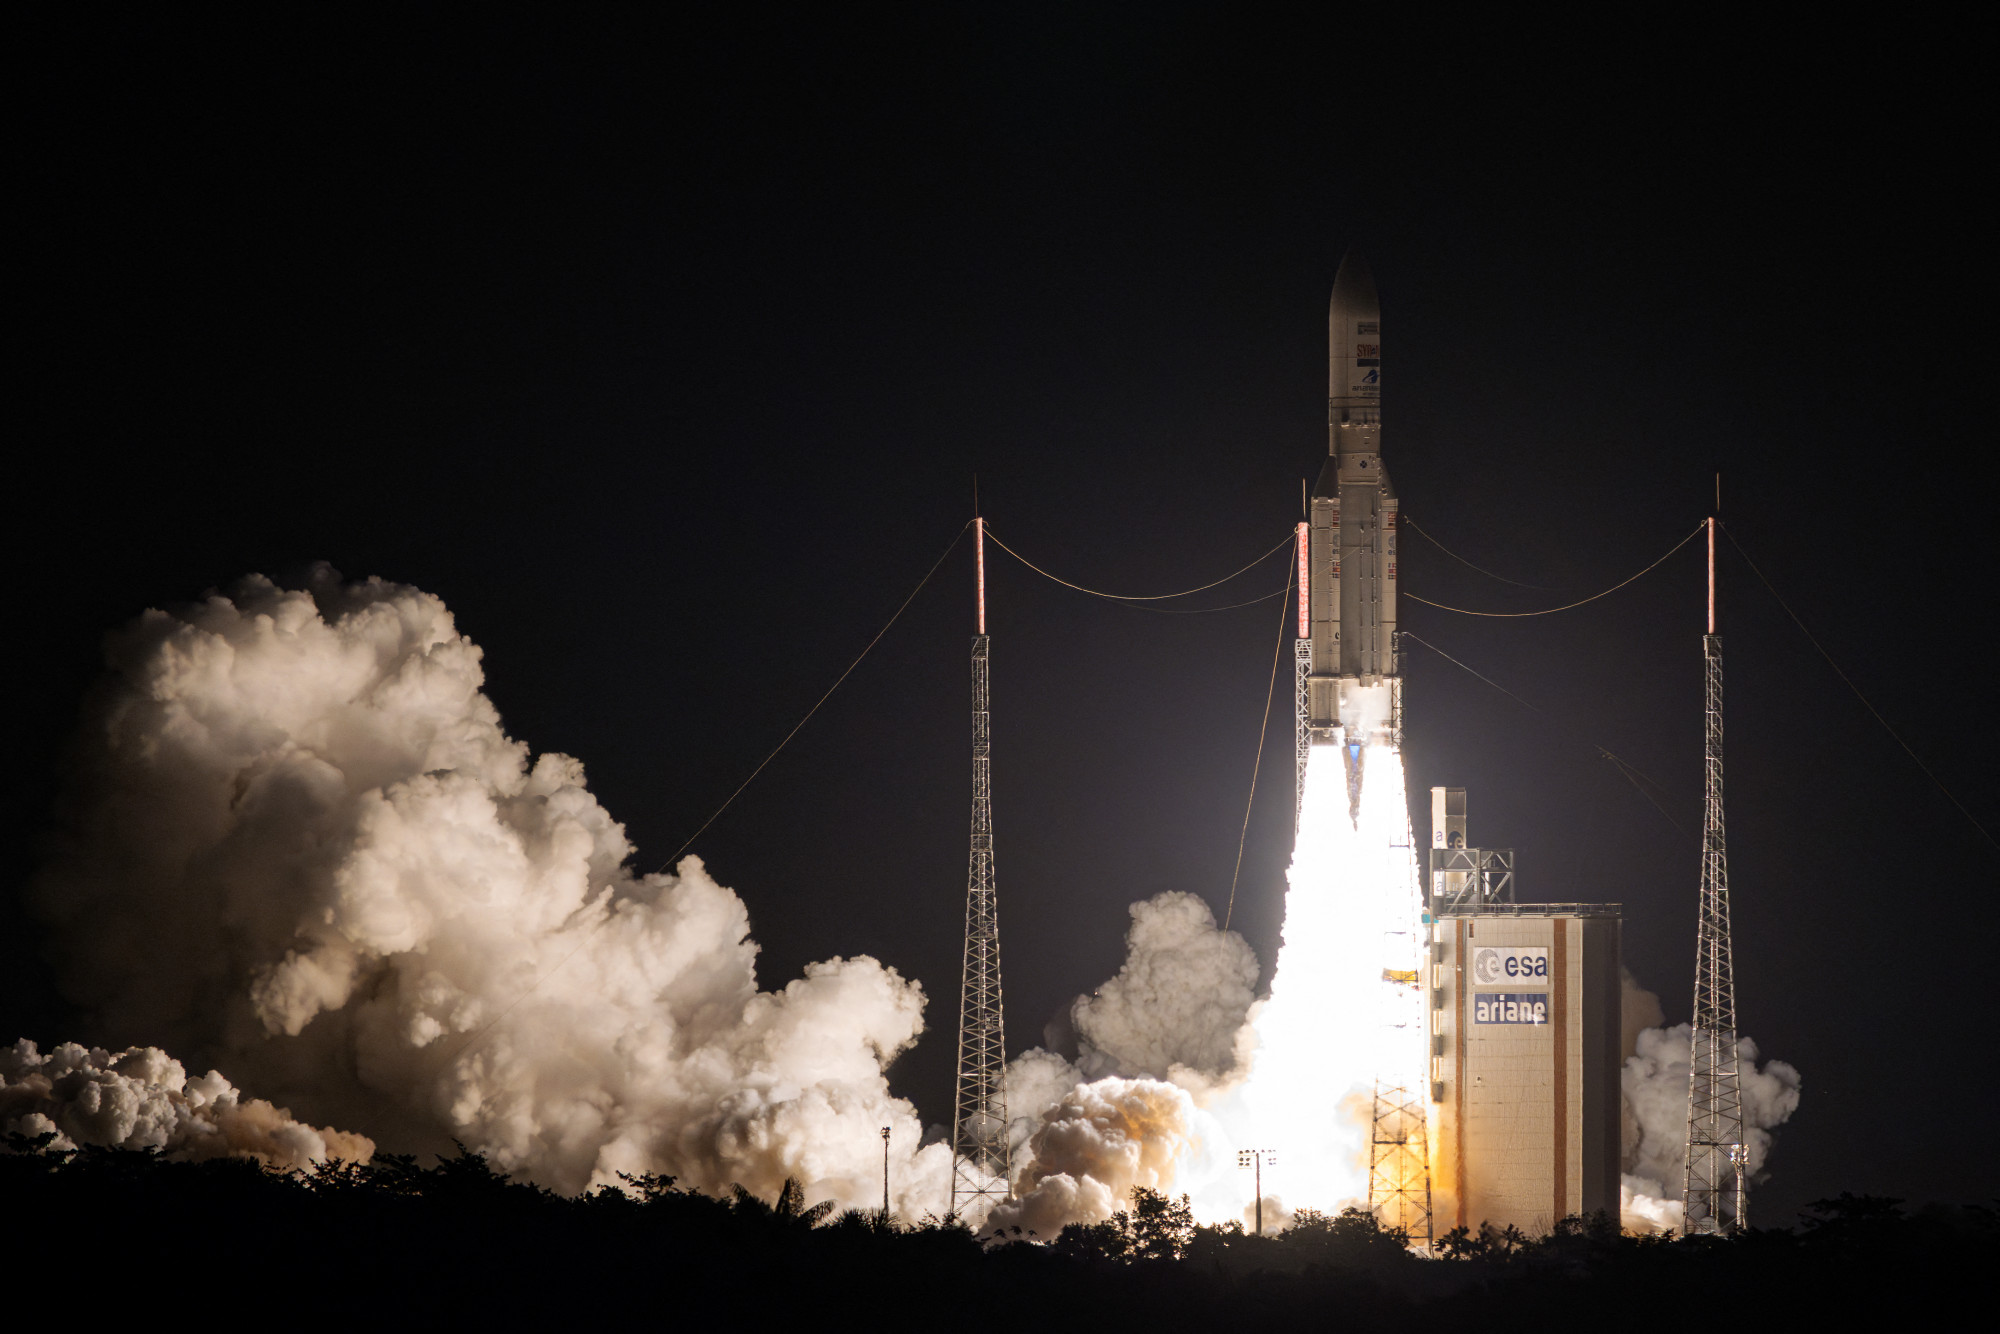 Utolsó útjára indult az Ariane-5 hordozórakéta július 5-én.